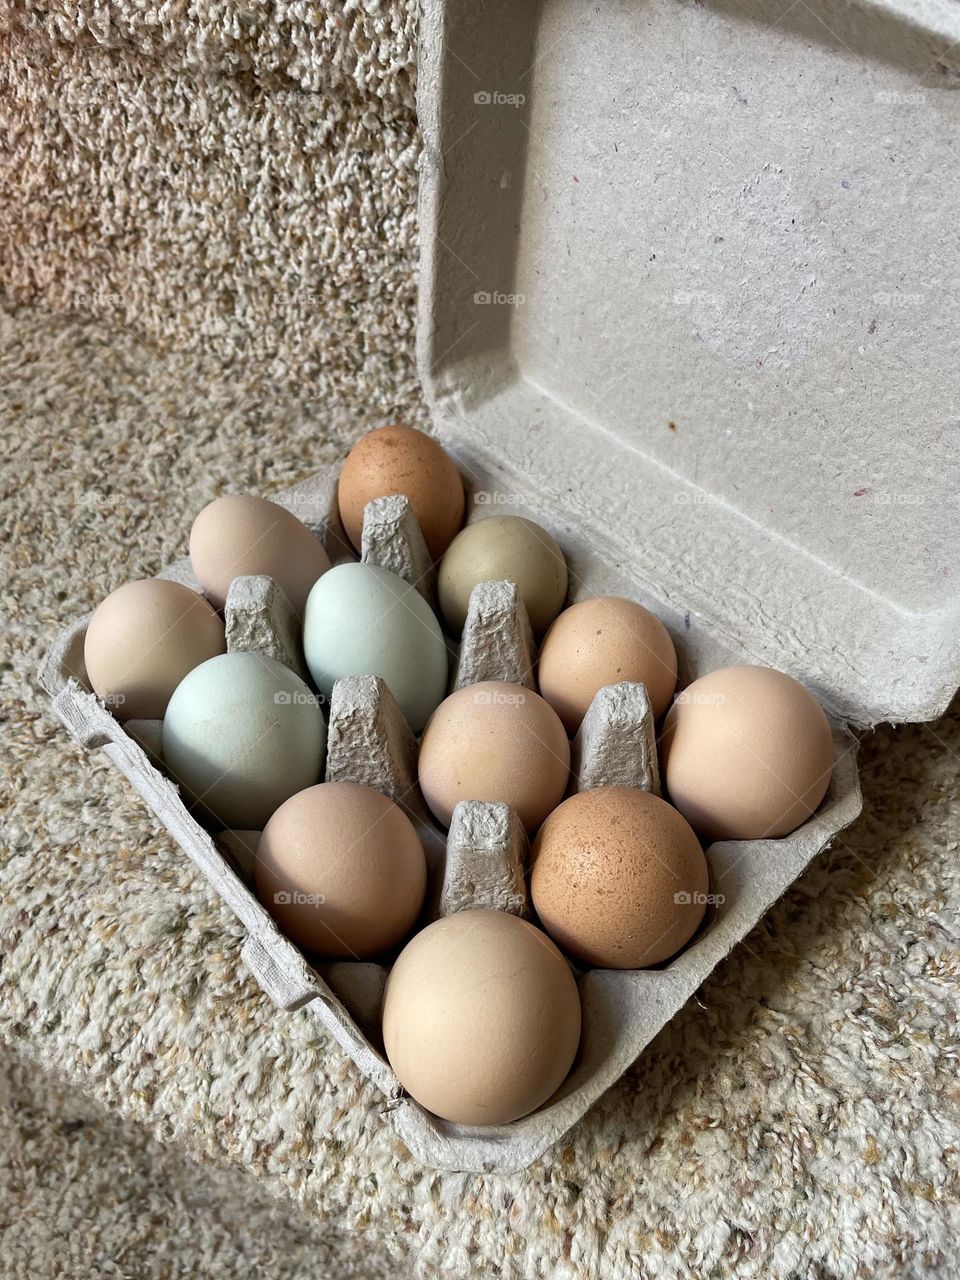 A dozen eggs